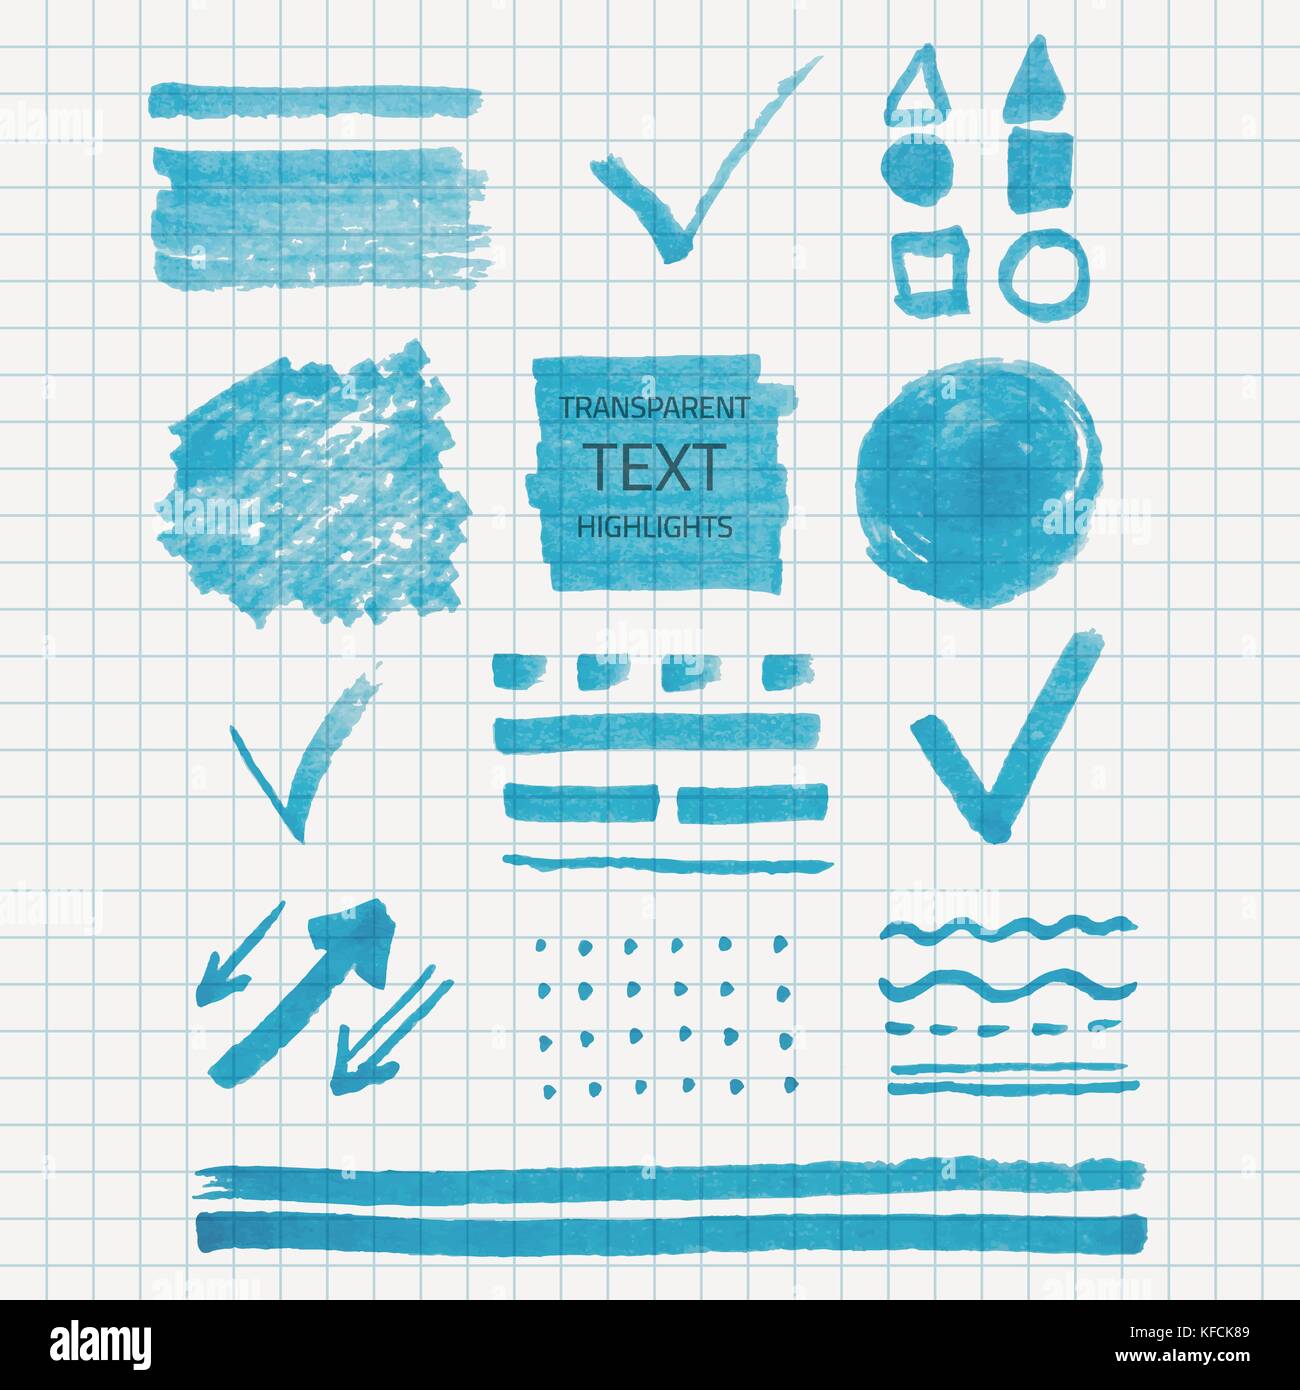 Vektor einrichten von transparenten Textmarker markiert, blaue Farbe auf der Schule überprüft Papier Stock Vektor